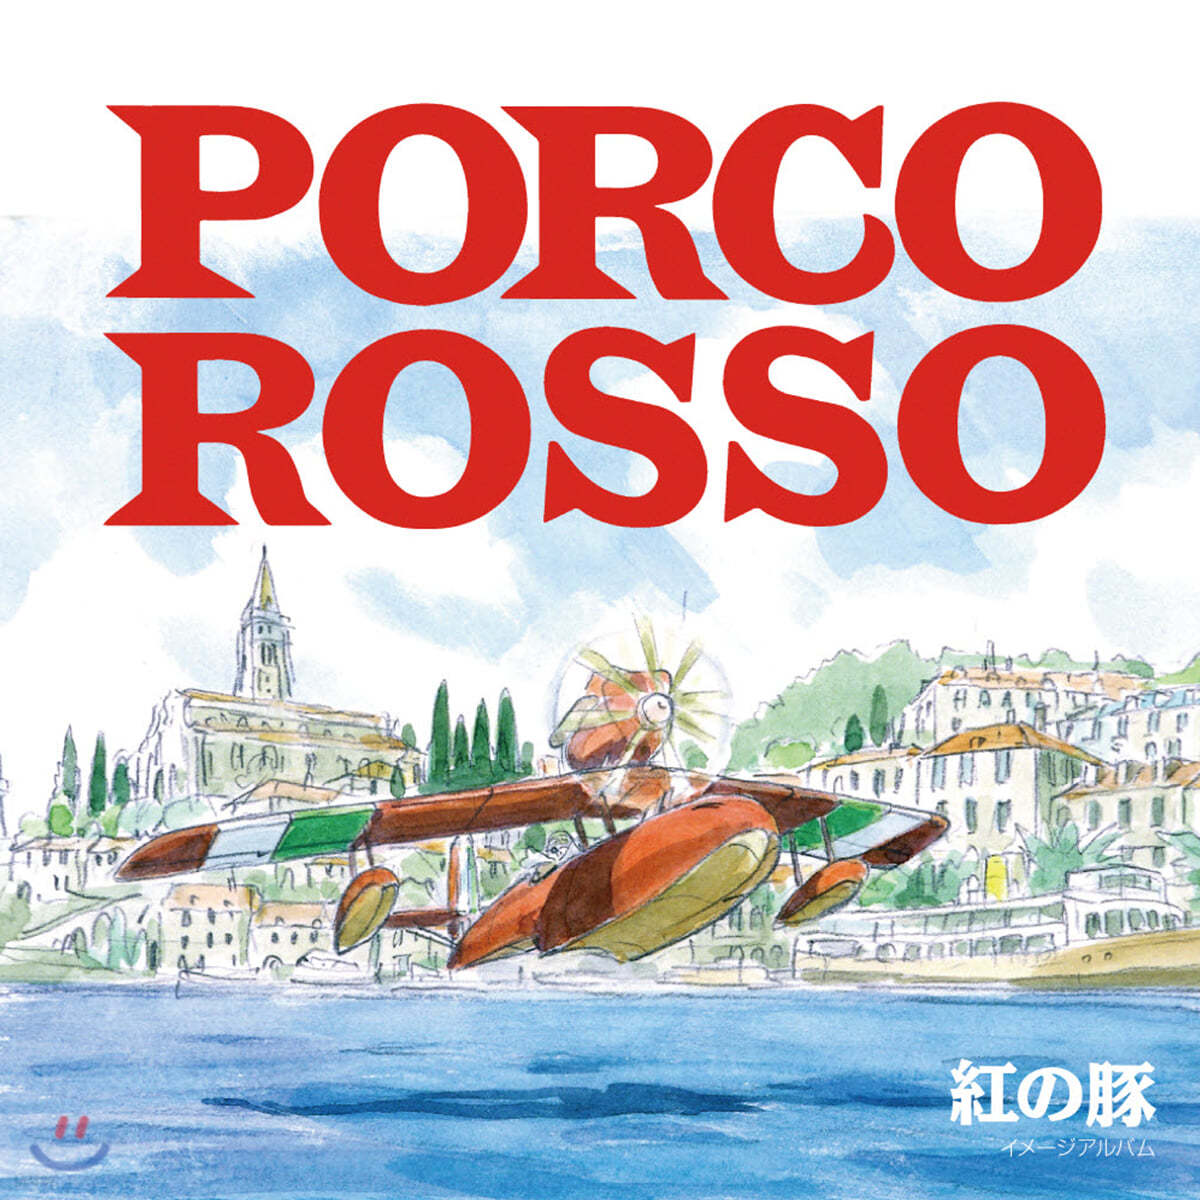 붉은 돼지 이미지 앨범 (Porco Rosso Image Album  by Joe Hisaishi) [LP]